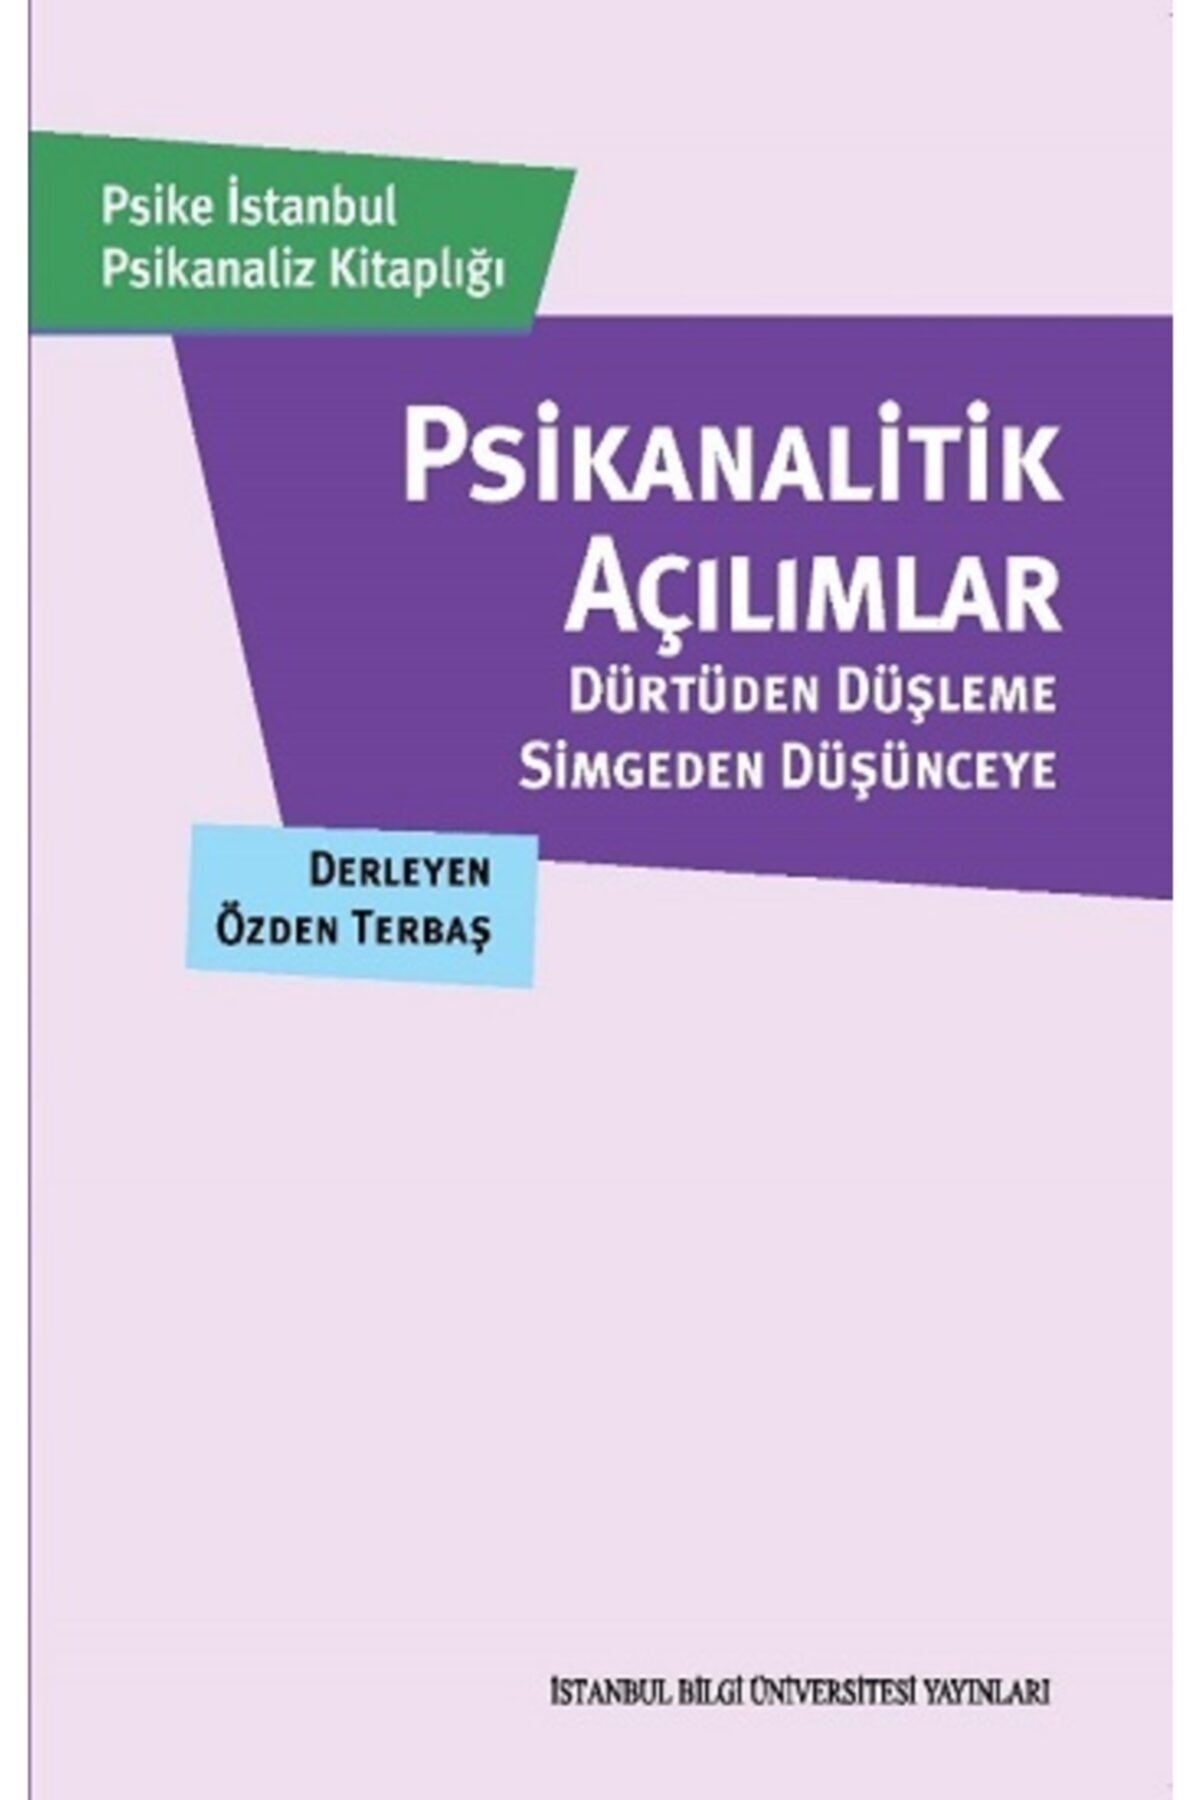 İstanbul Bilgi Üniversitesi Yayınları Psikanalitik Açılımlar: Dürtüden Düşleme, Simgeden Düşünceye